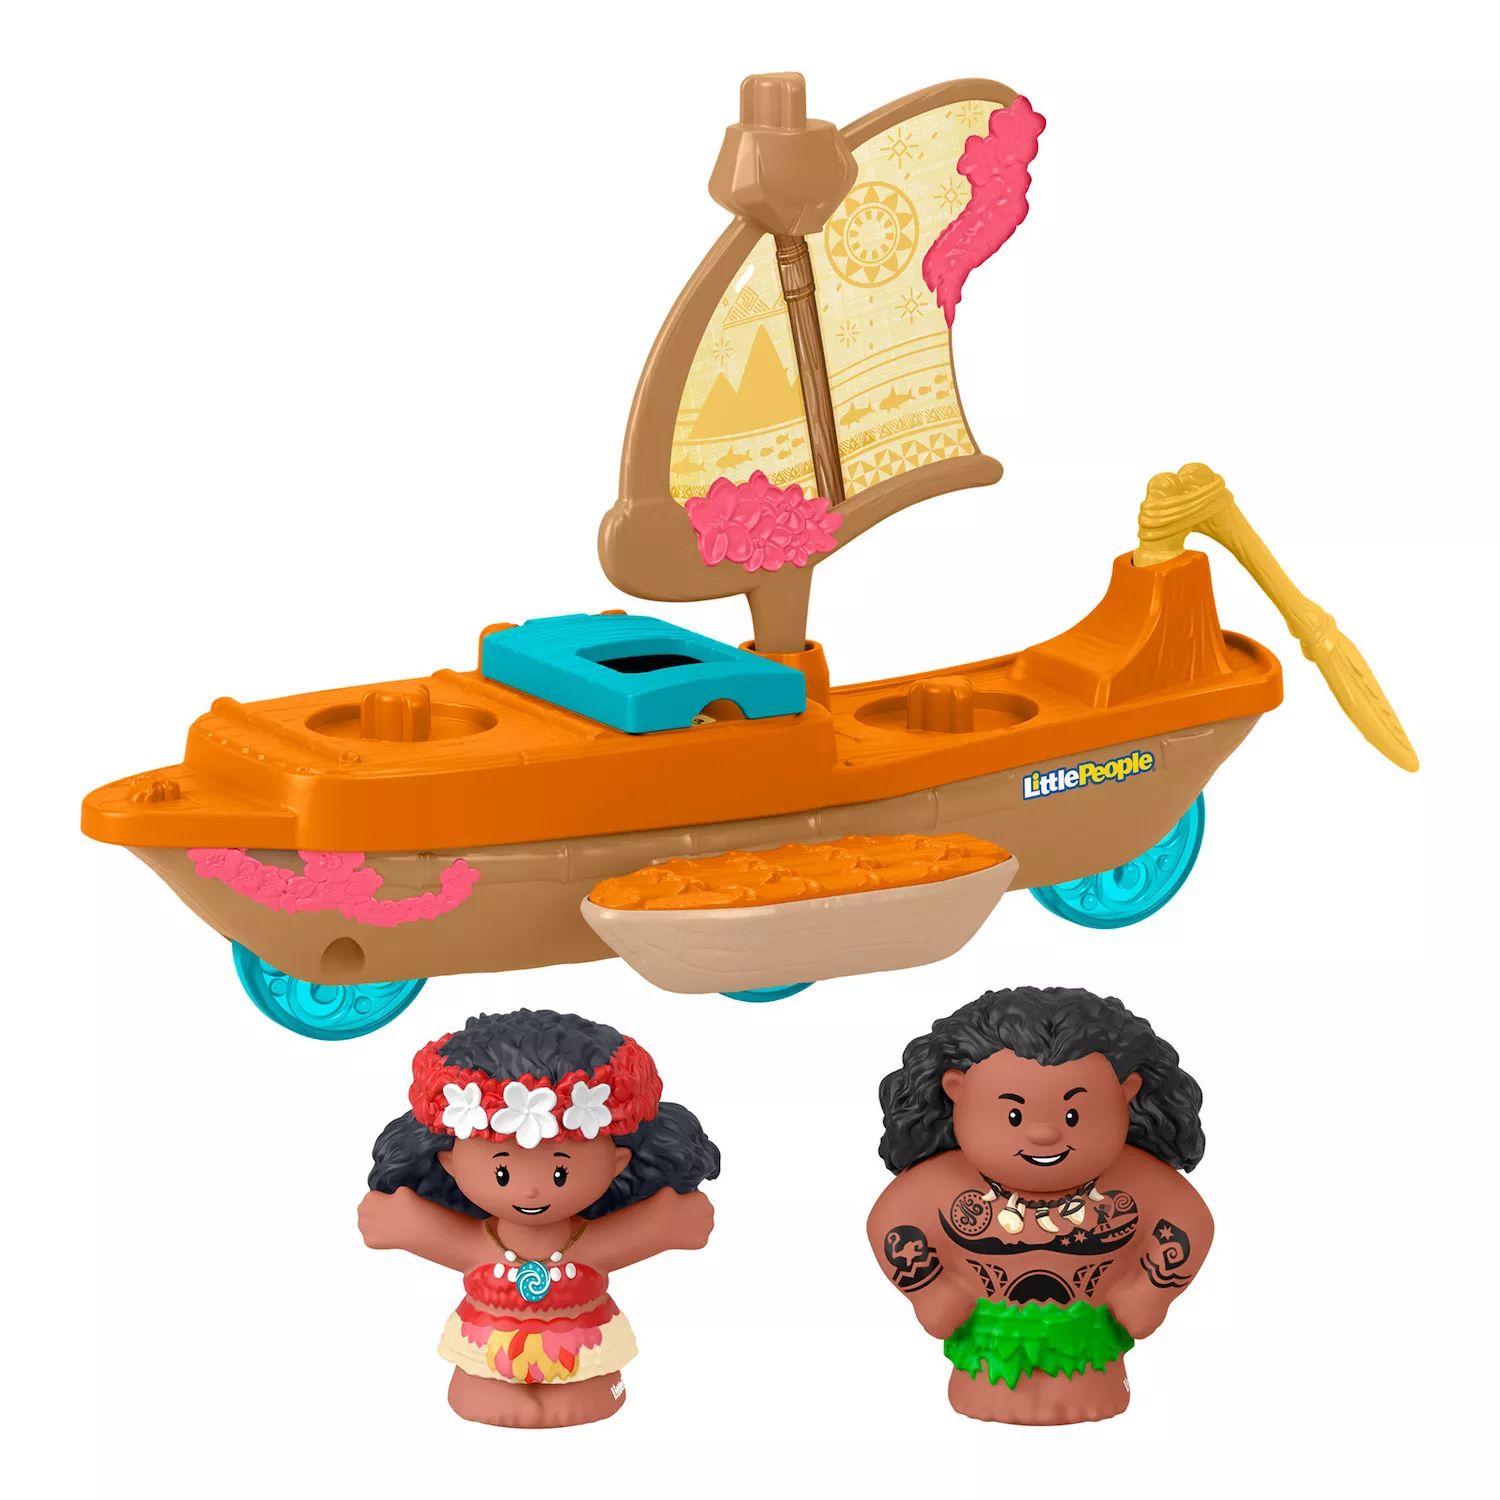 Набор каноэ и фигурок Disney's Moana & Maui Little People от Fisher-Price Little People набор fisher price little people farm animals из восьми фигурок